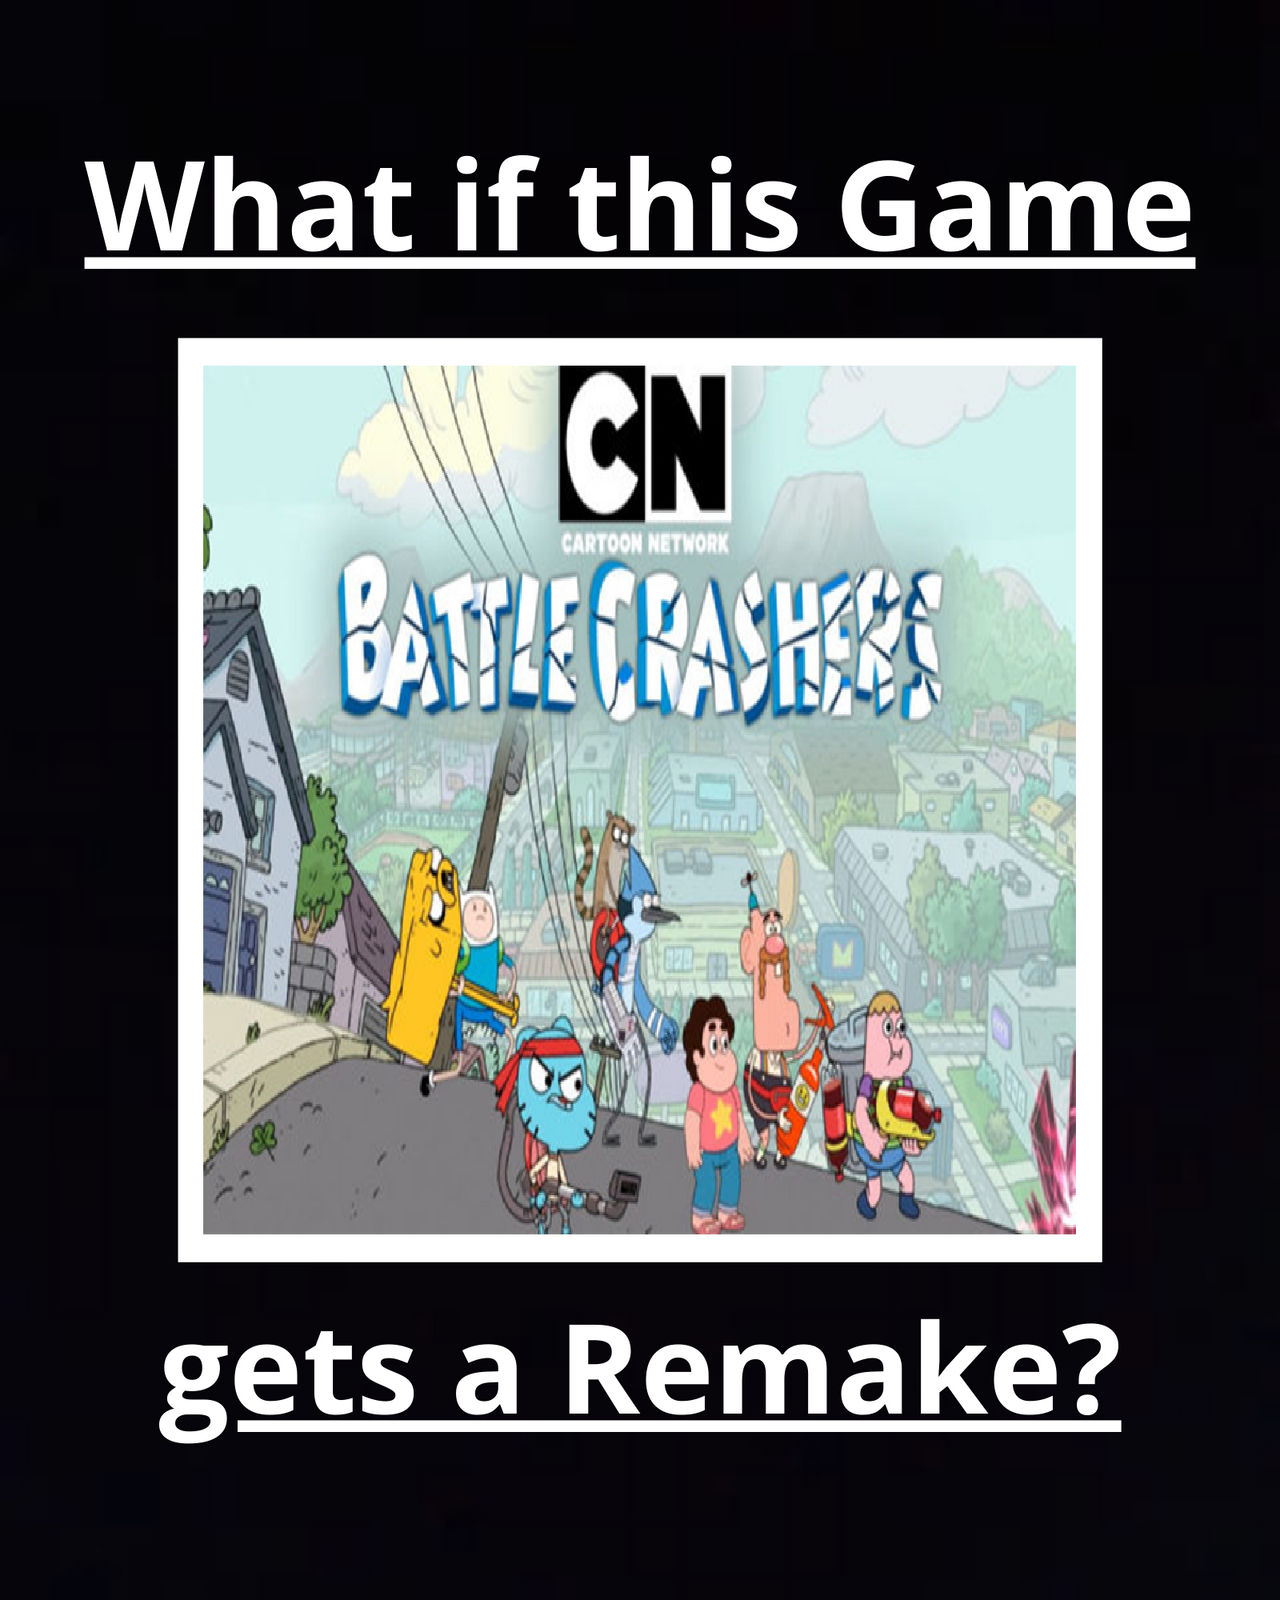 Análise: Cartoon Network: Battle Crashers